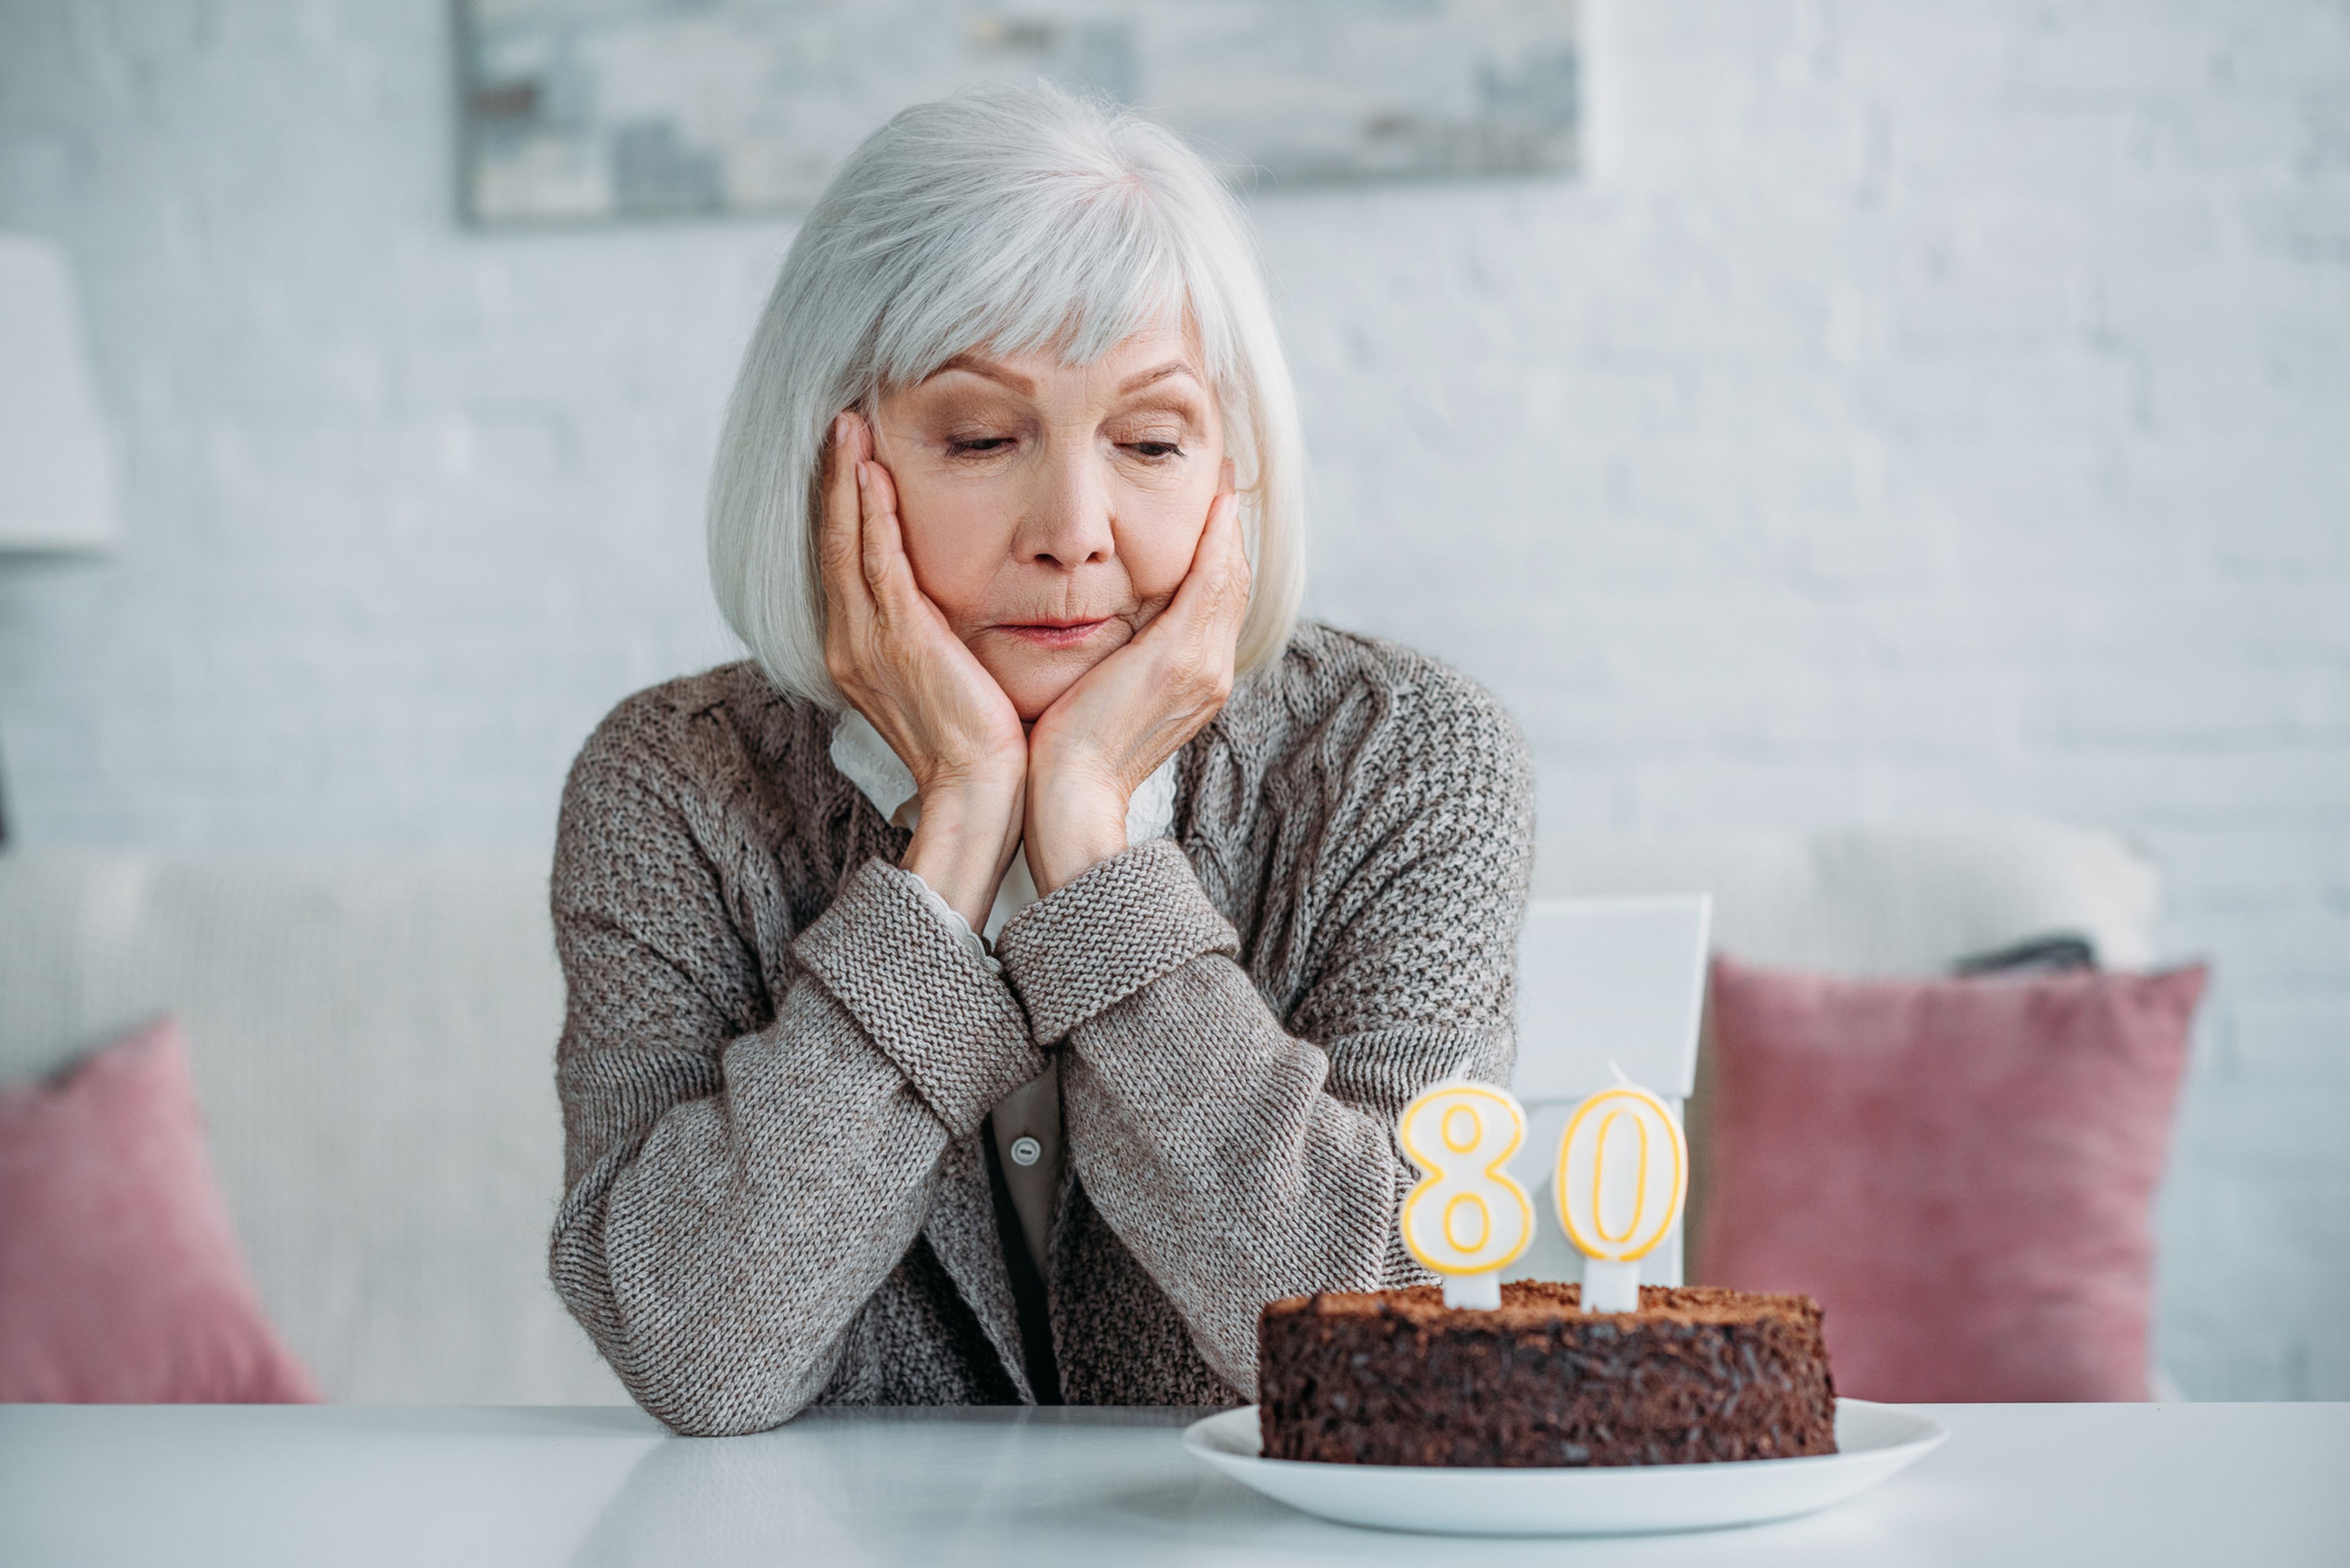 Una mujer sola celera su 80 cumpleaños.